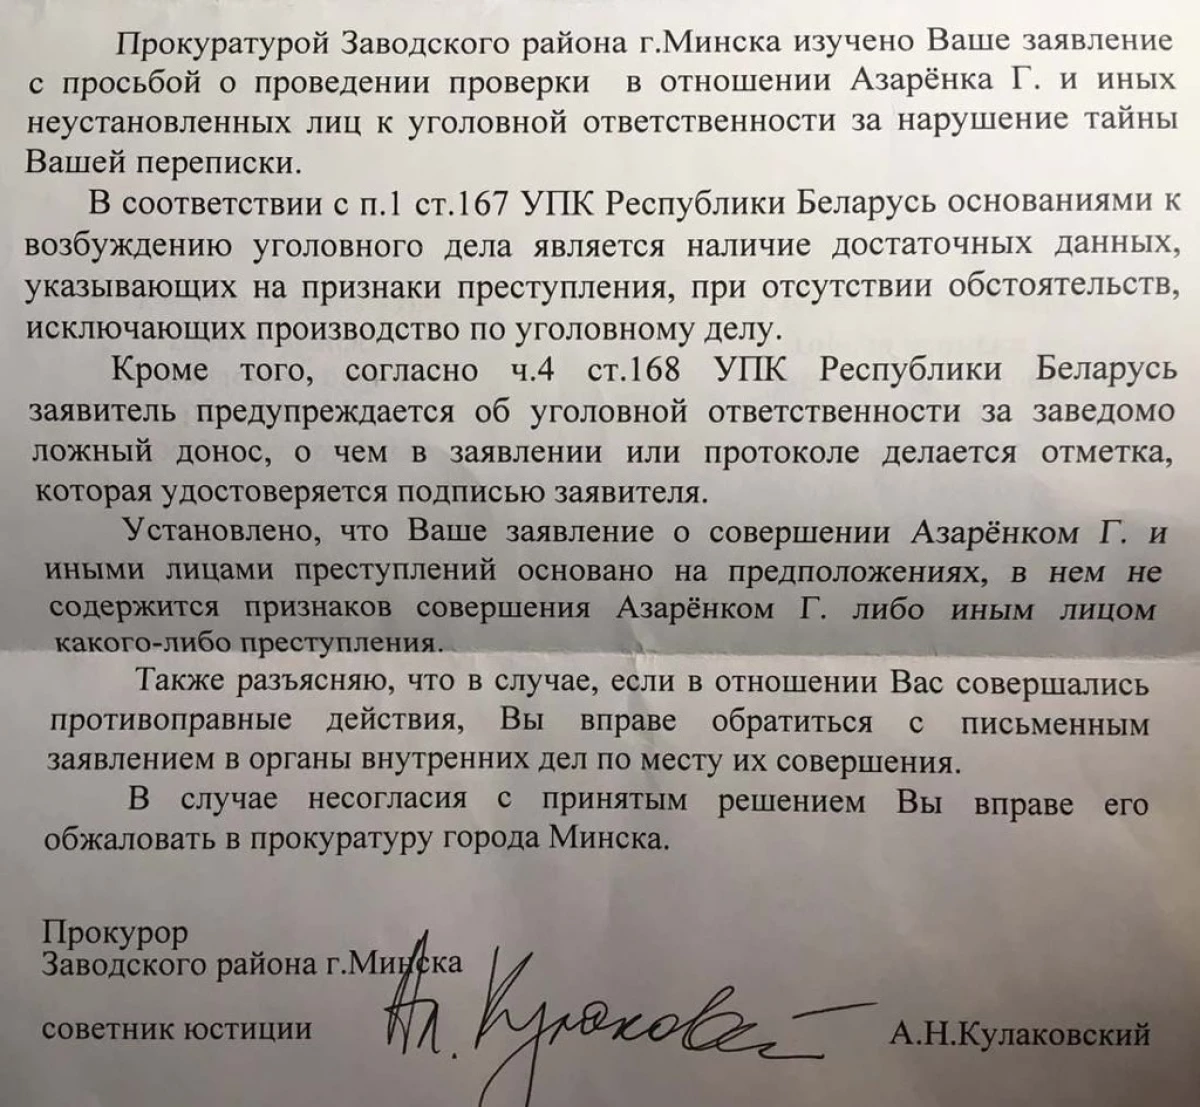 Principale martedì. KolesNikova - per rifiutare di avviare un caso criminale sul fatto del rapimento, la petizione contro il riconoscimento della band bandiera dell'estremista ha firmato 80 mila persone 19345_3